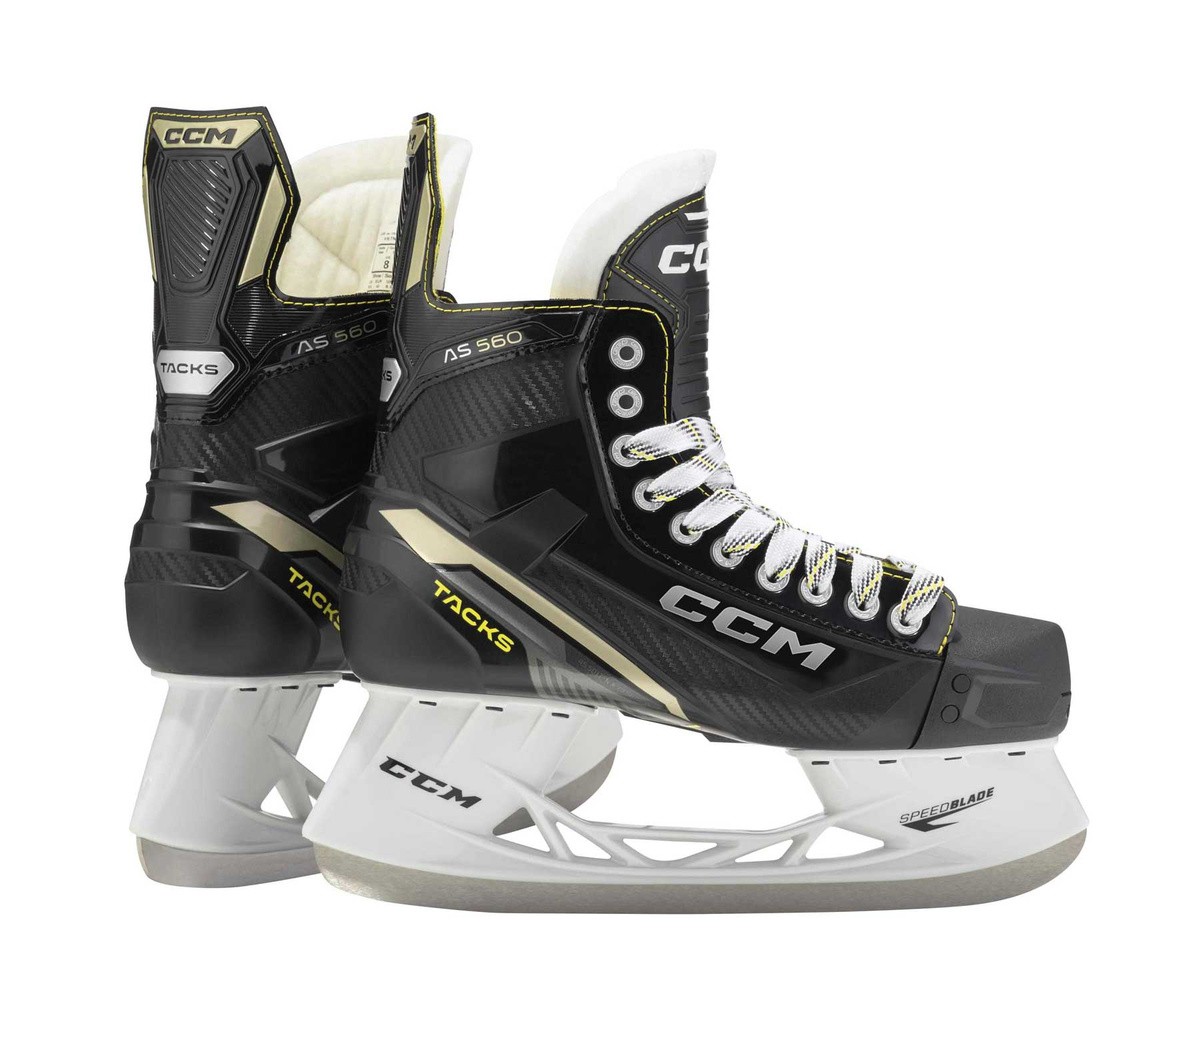 CCM Tacks AS560 Intermediate Ice Hockey Skates